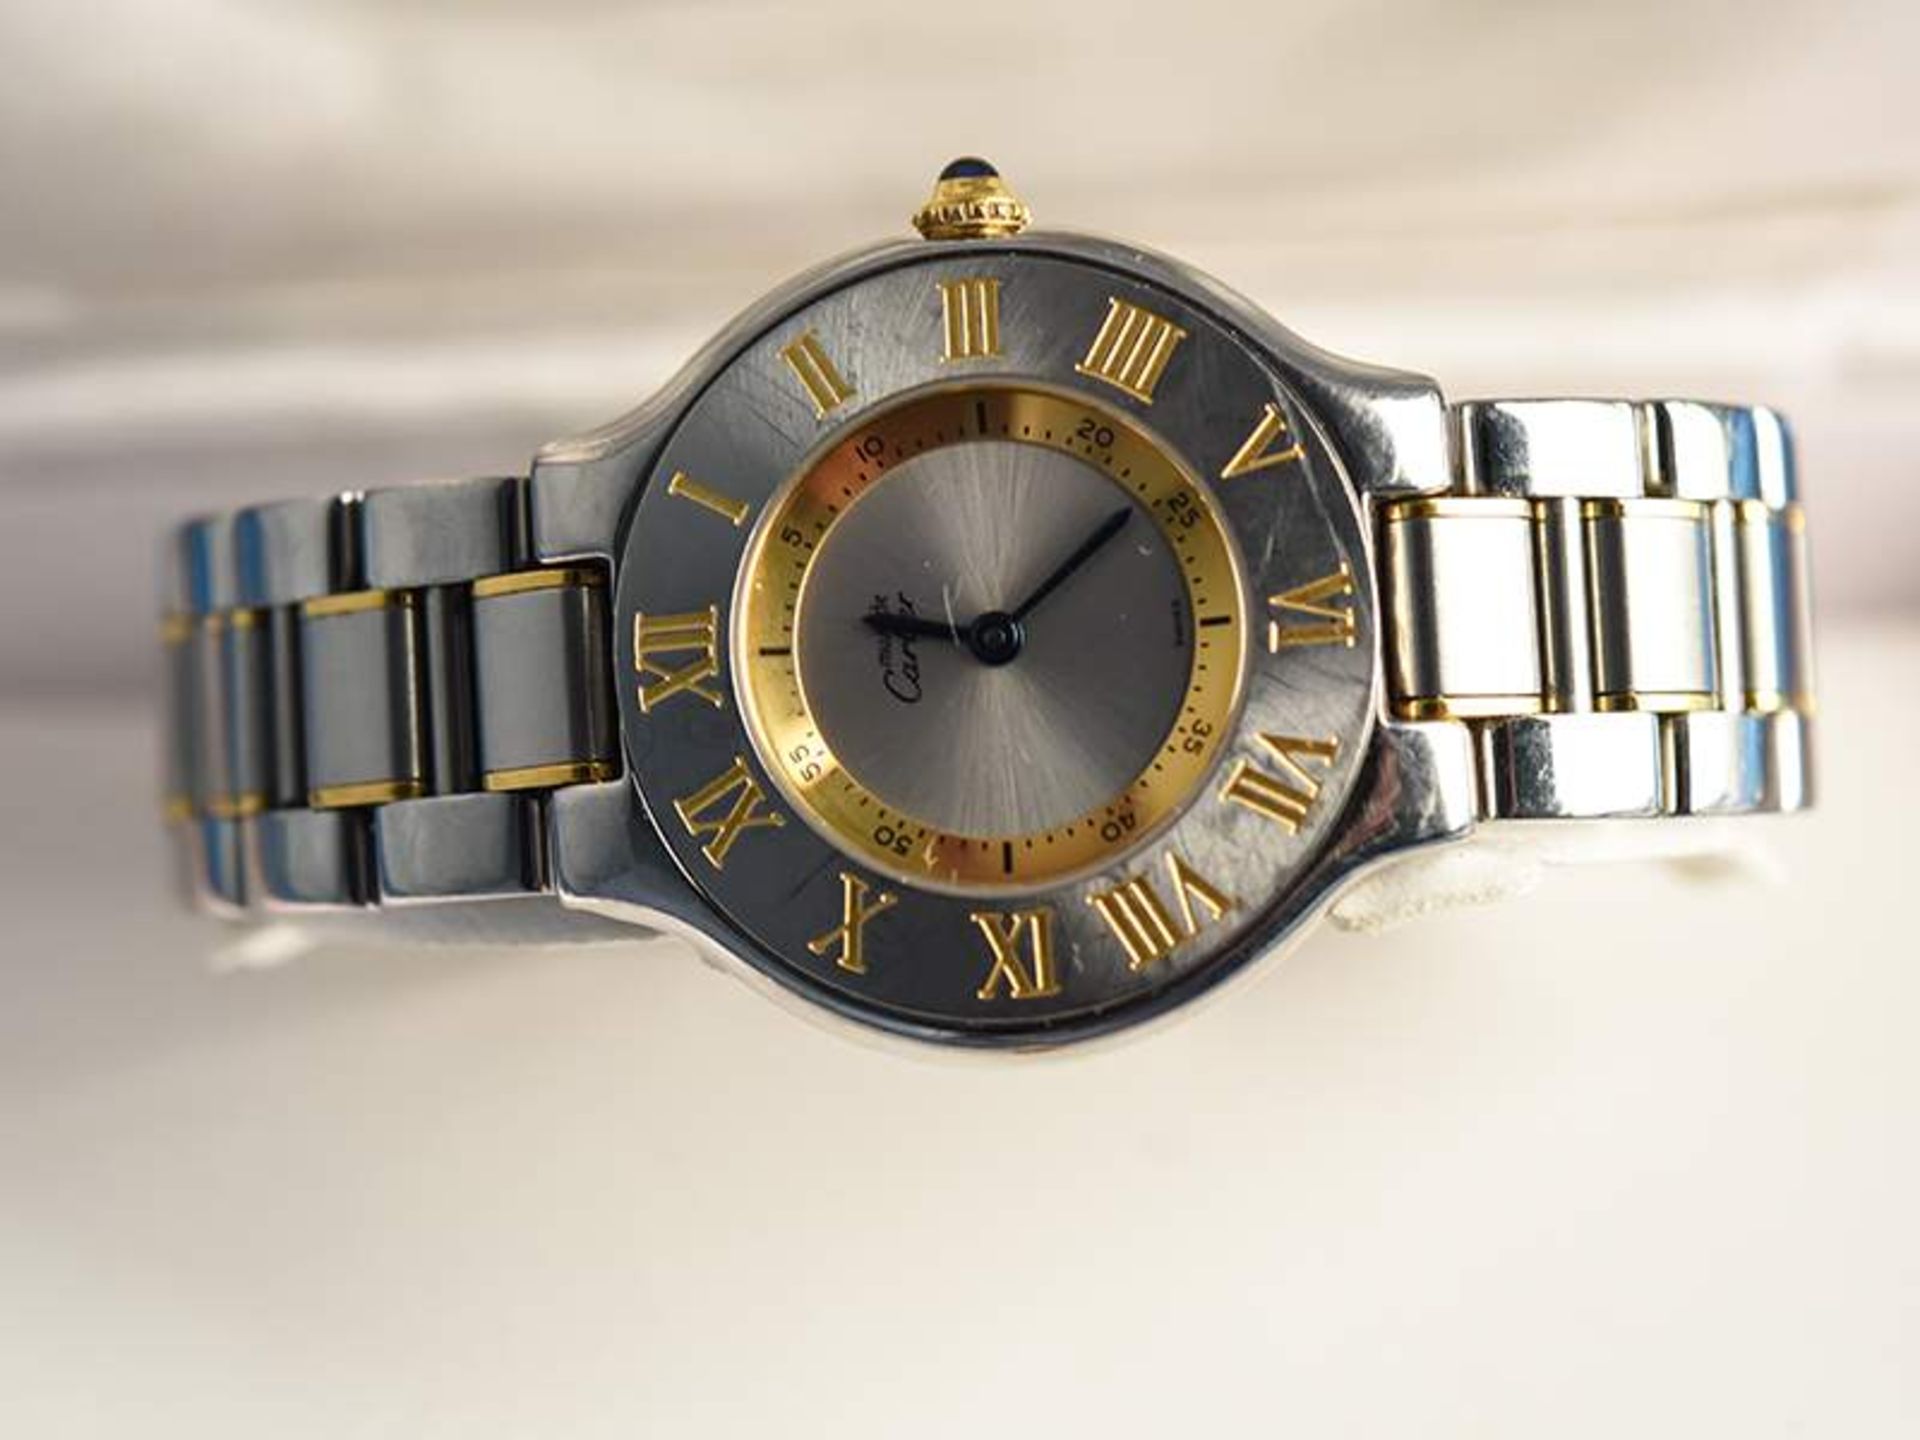 Damenarmbanduhr, bezeichnet Cartier, Modell "Ladies Must de 21 Two Tone", 20. Jh.Stahl und Gelbgold. - Bild 2 aus 2